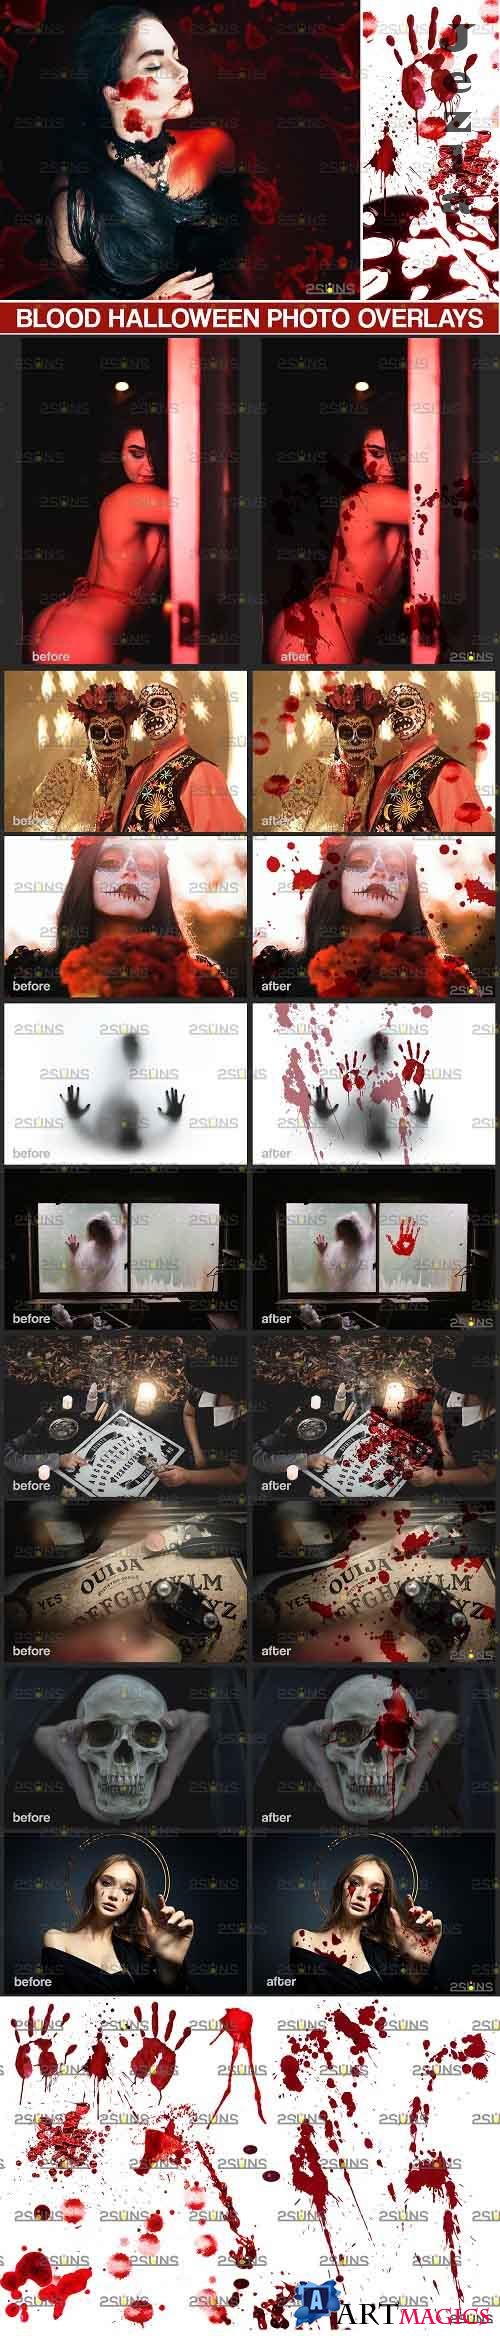 Blood Photo Overlay, Halloween overlay, blood splatter  - 719439